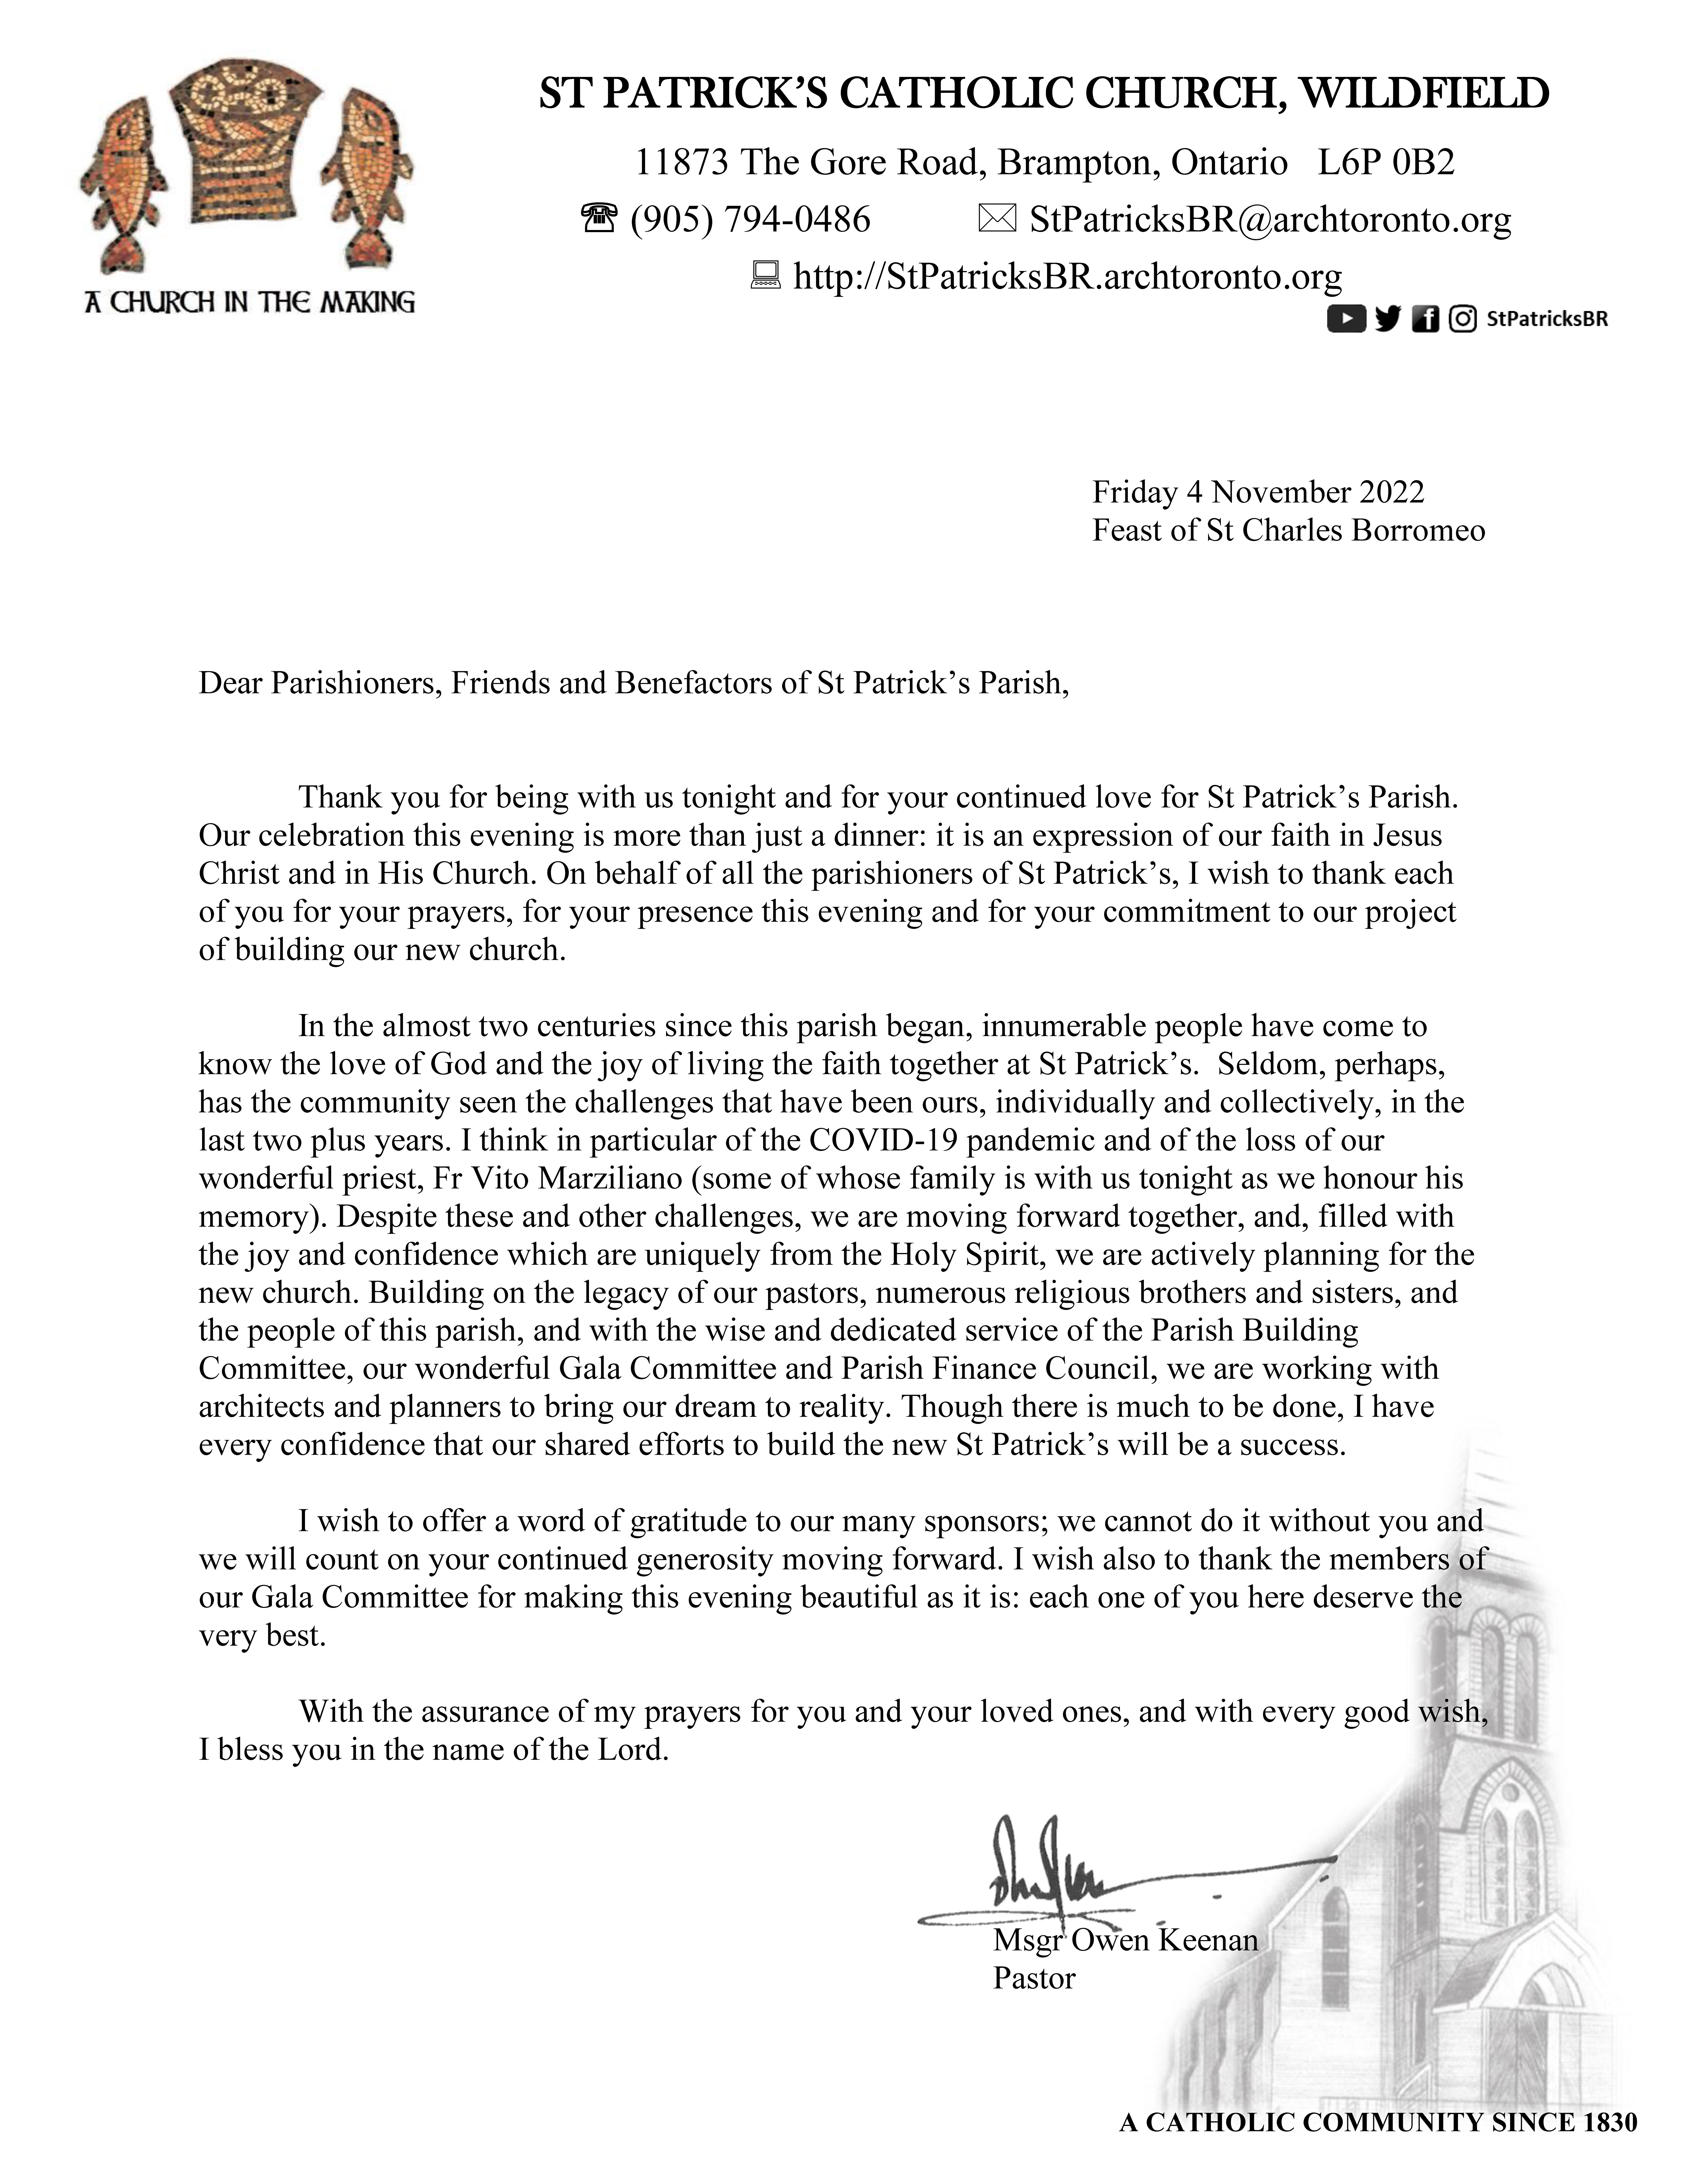 November 2022 letter from Monsignor for the Gala